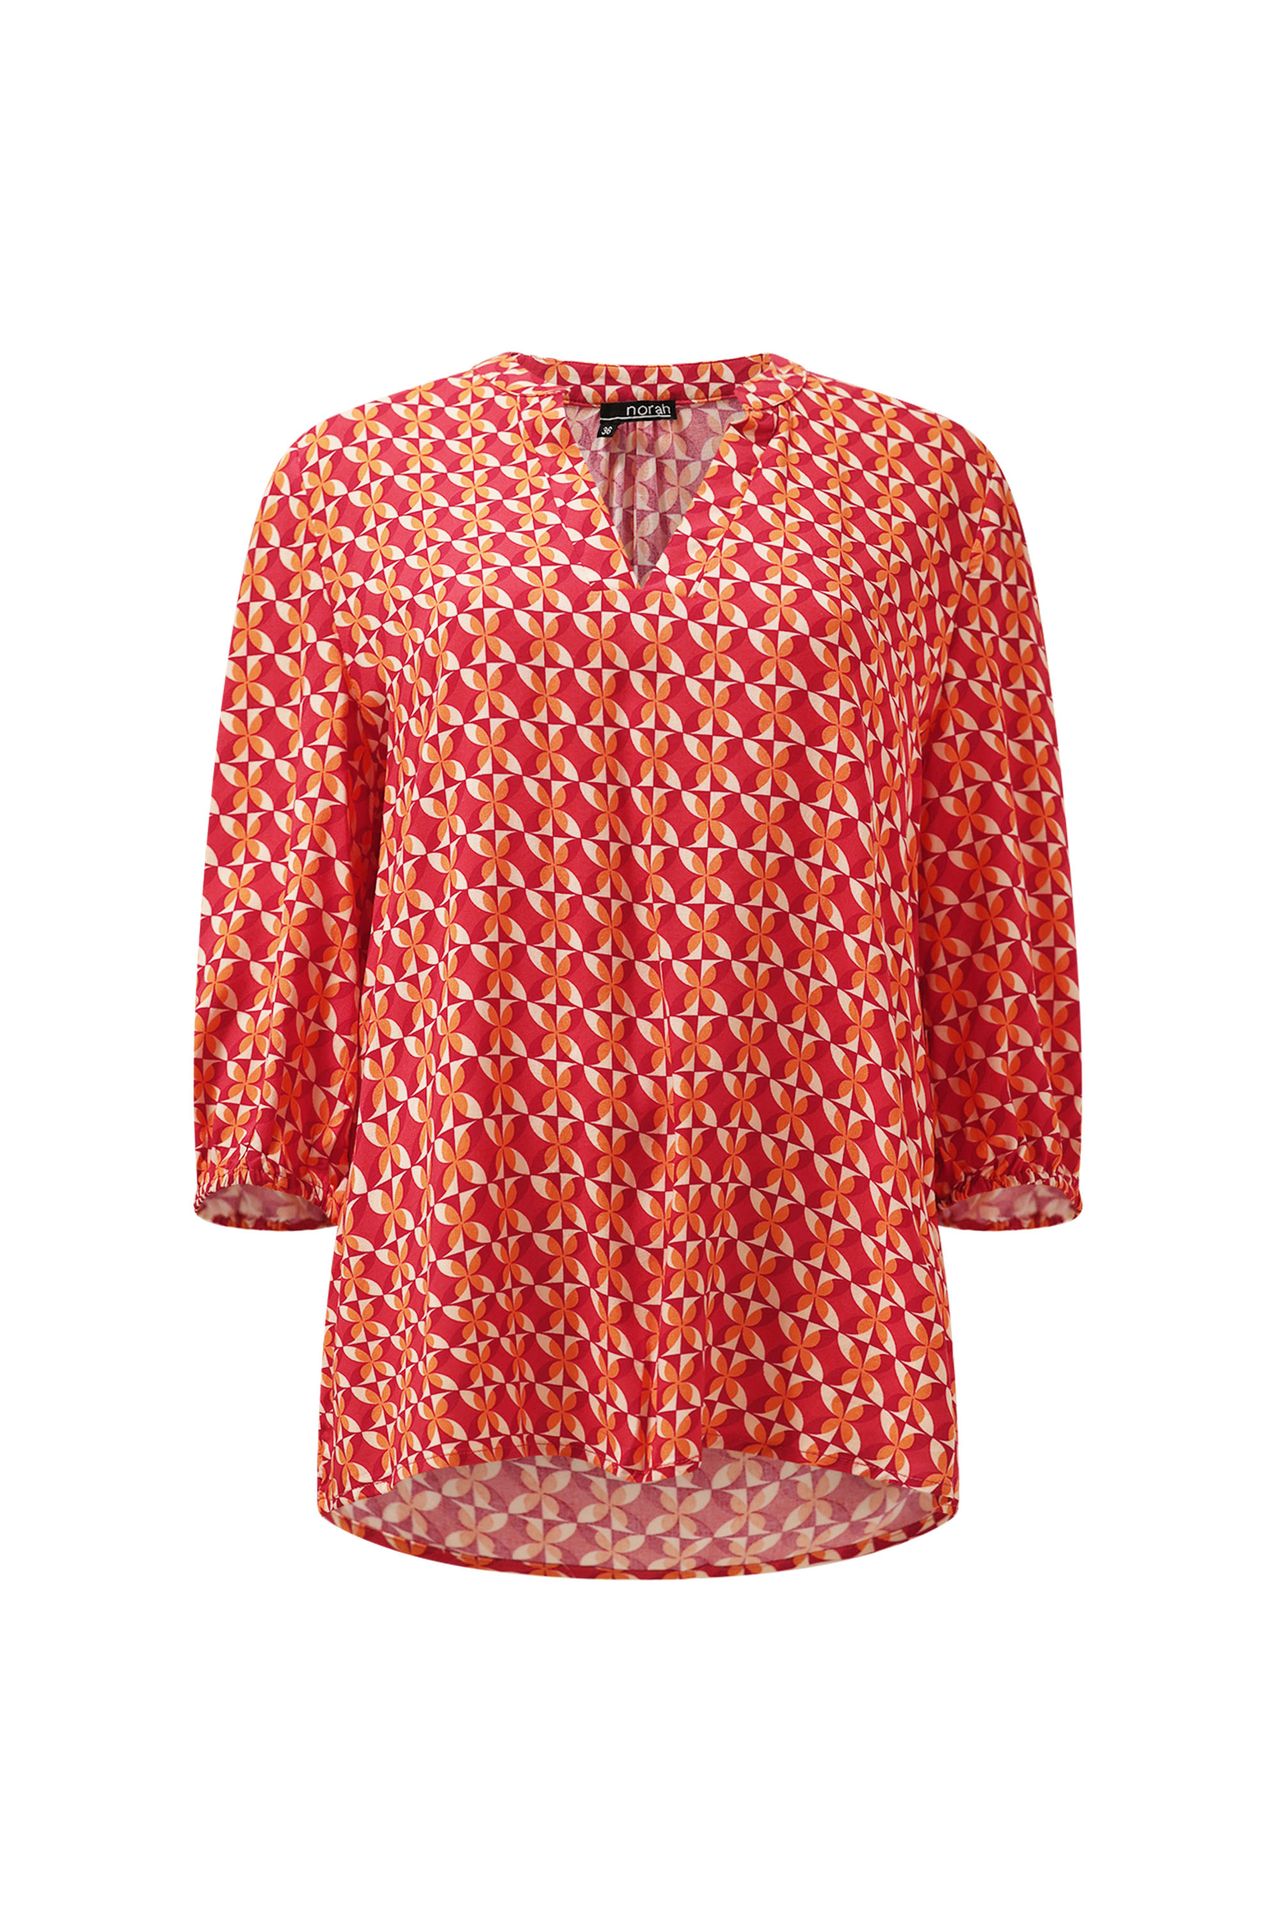 Norah Roze/oranje blouse pink/orange 214150-937